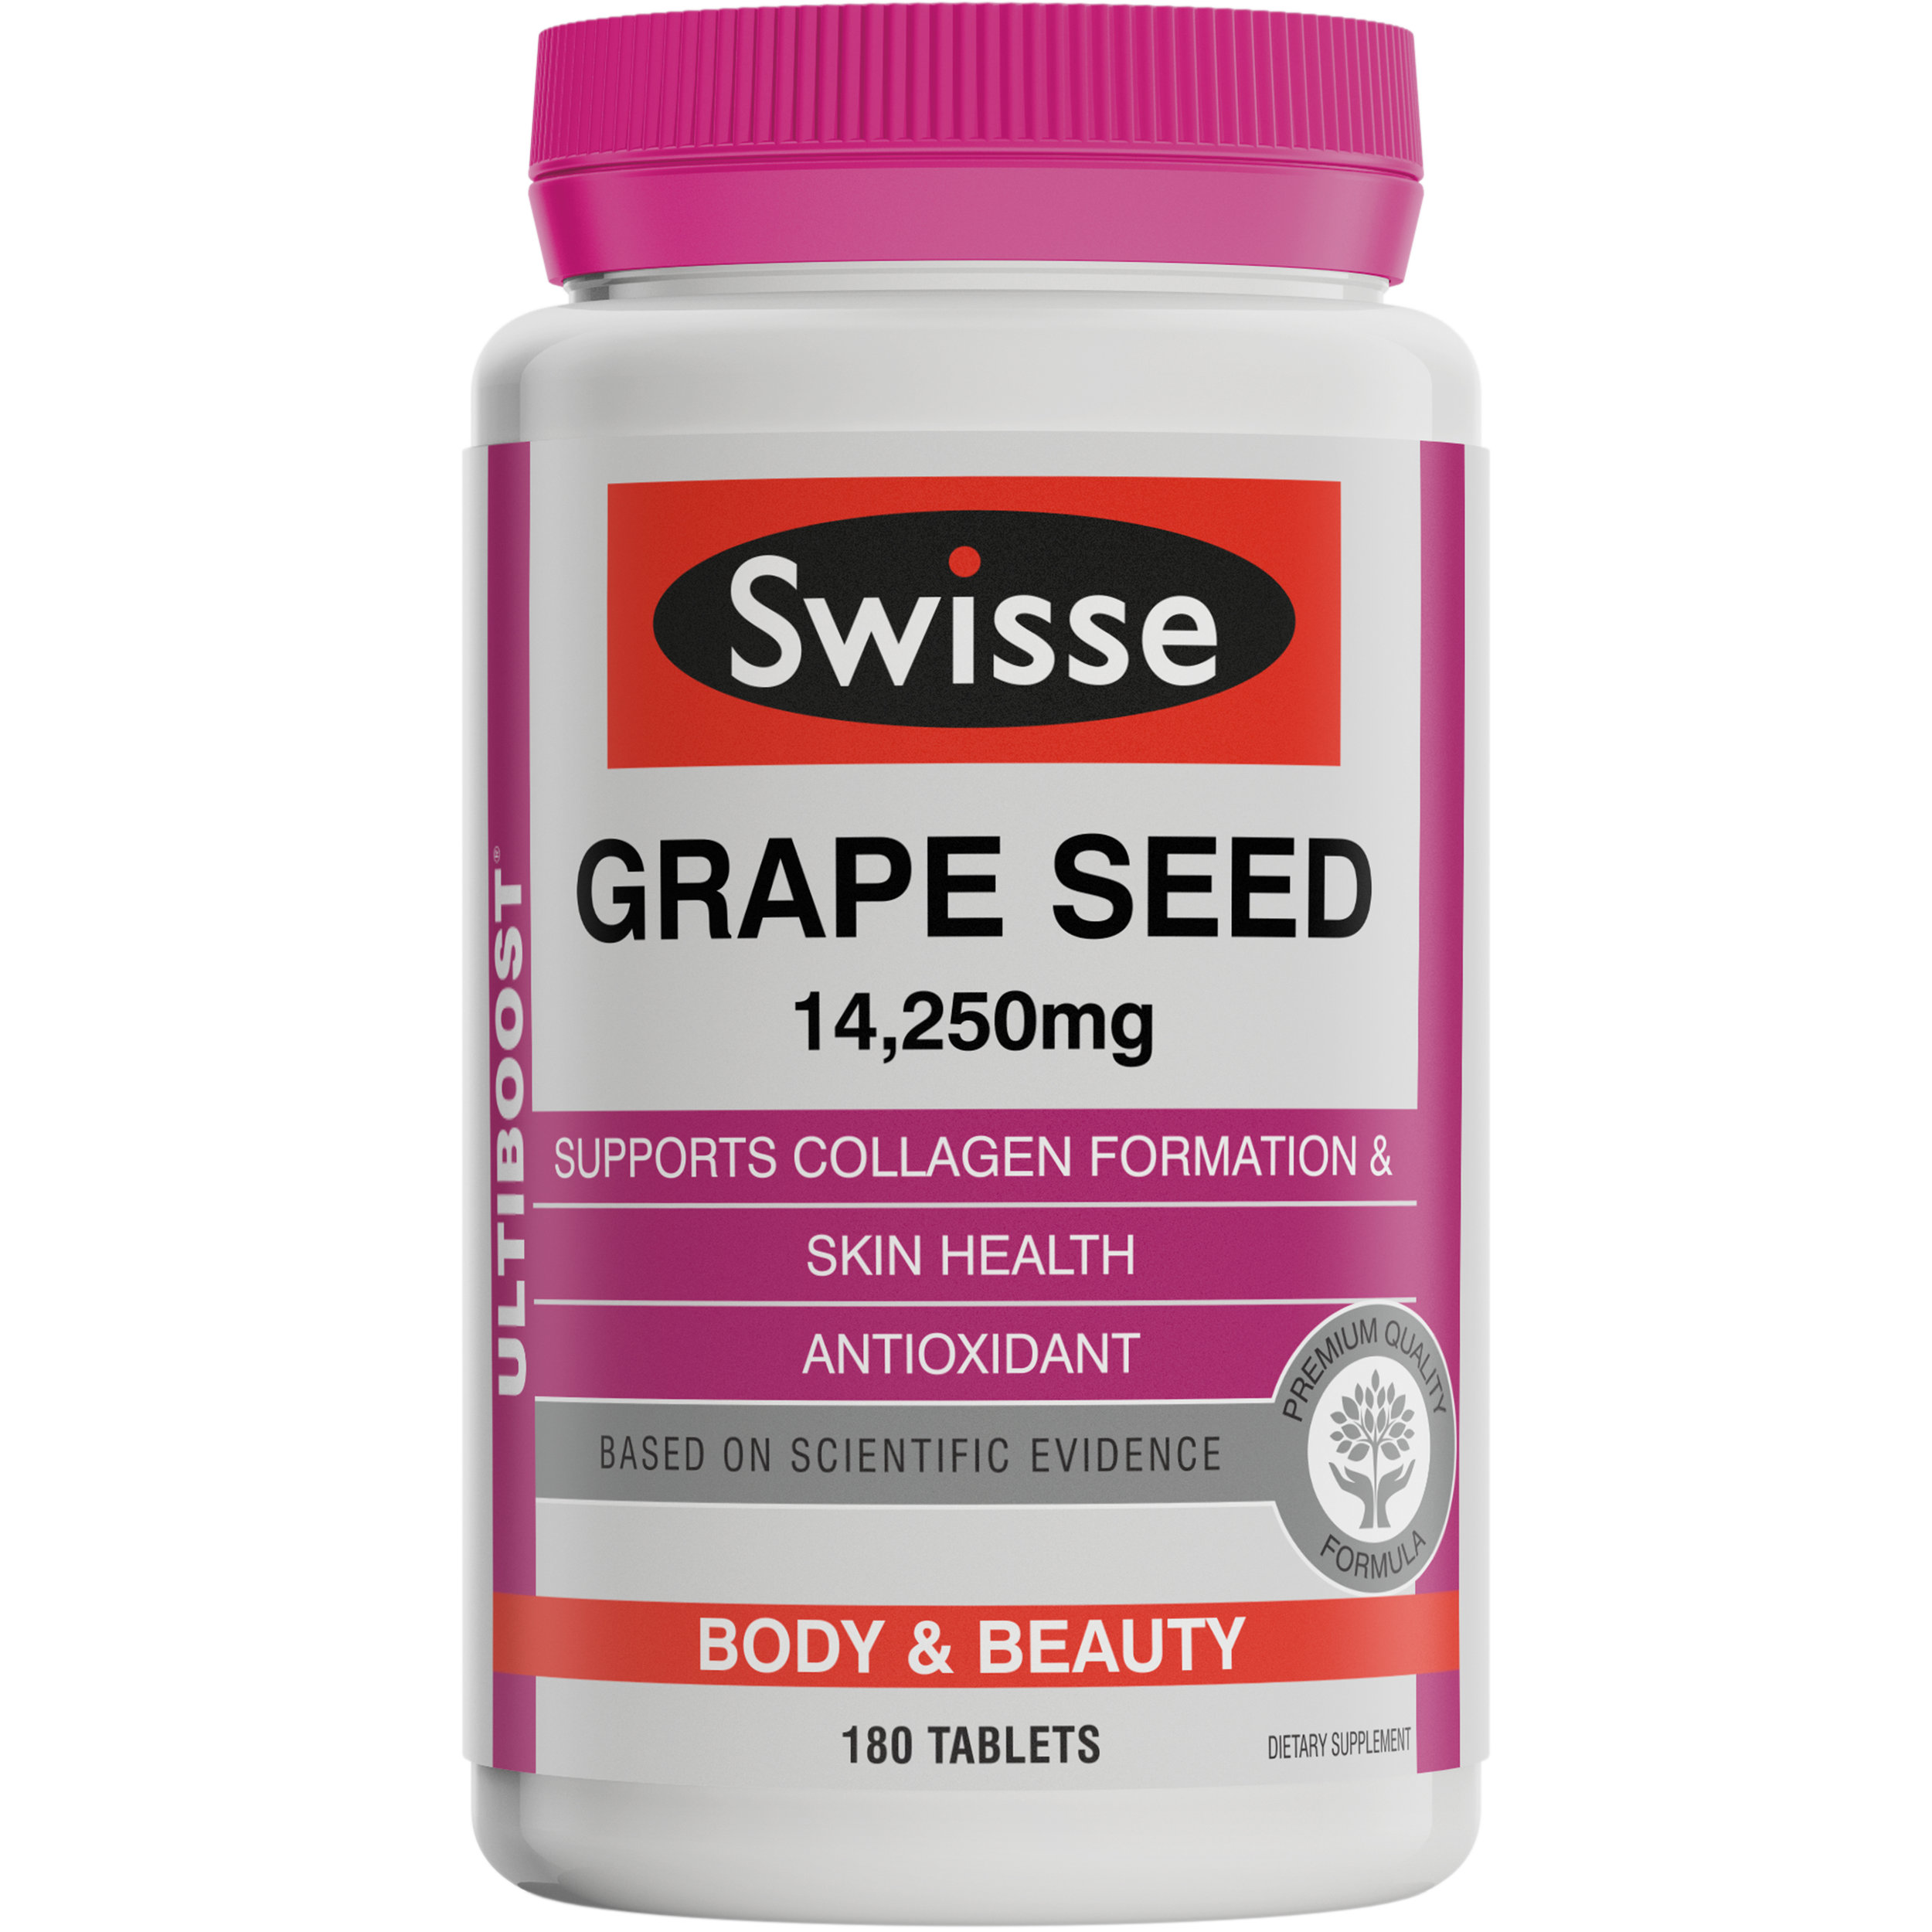 Ultiboost Grape Seed